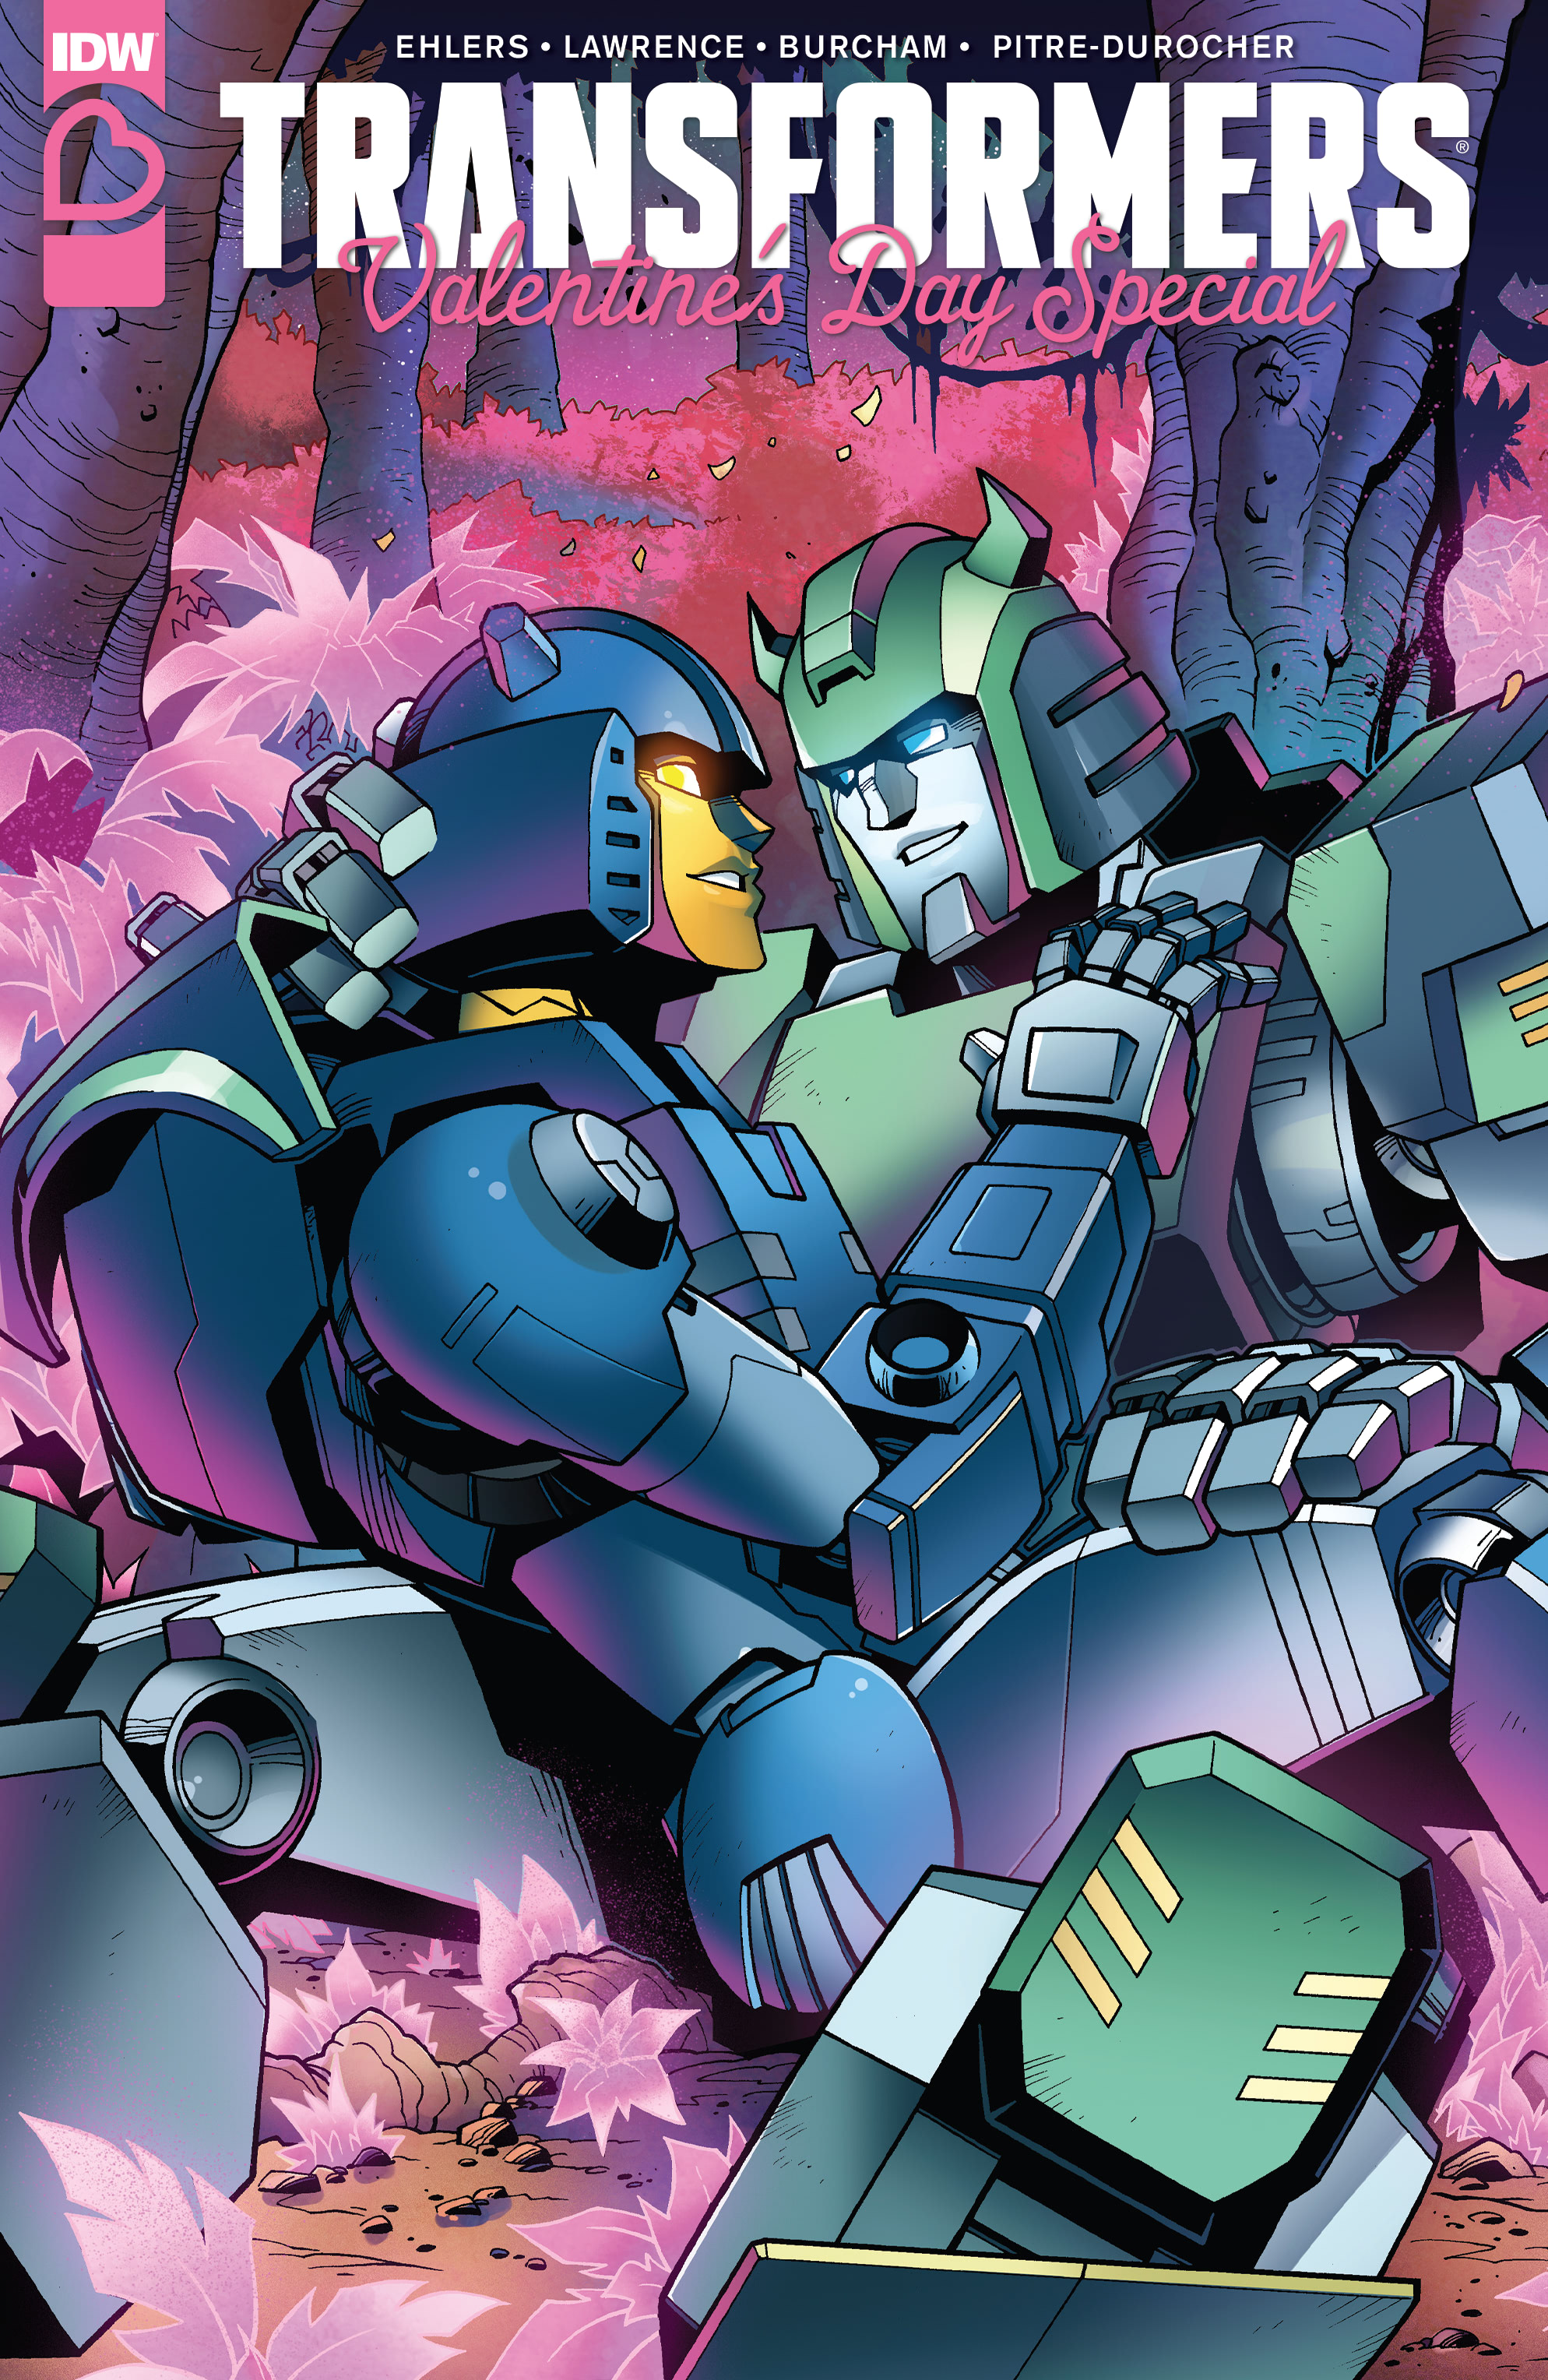 Transformers comics read online